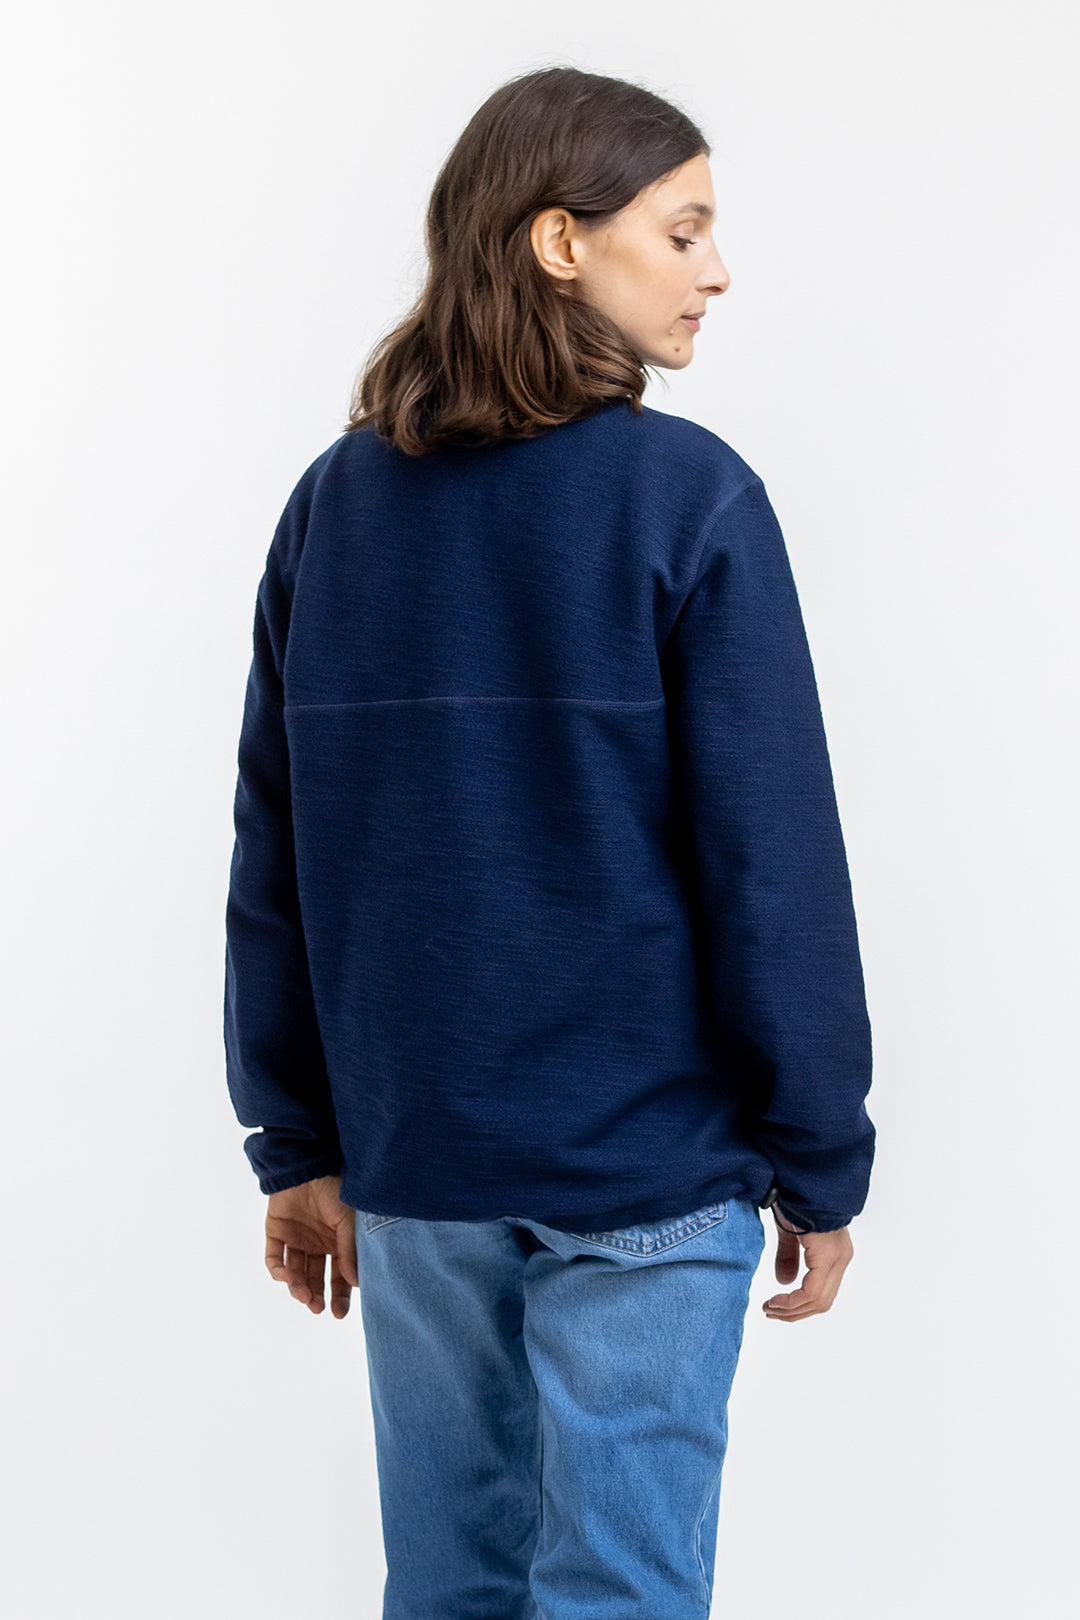 Dunkel-blaues Reissverschluss-Sweatshirt Divided aus 100% Baumwolle von Rotholz